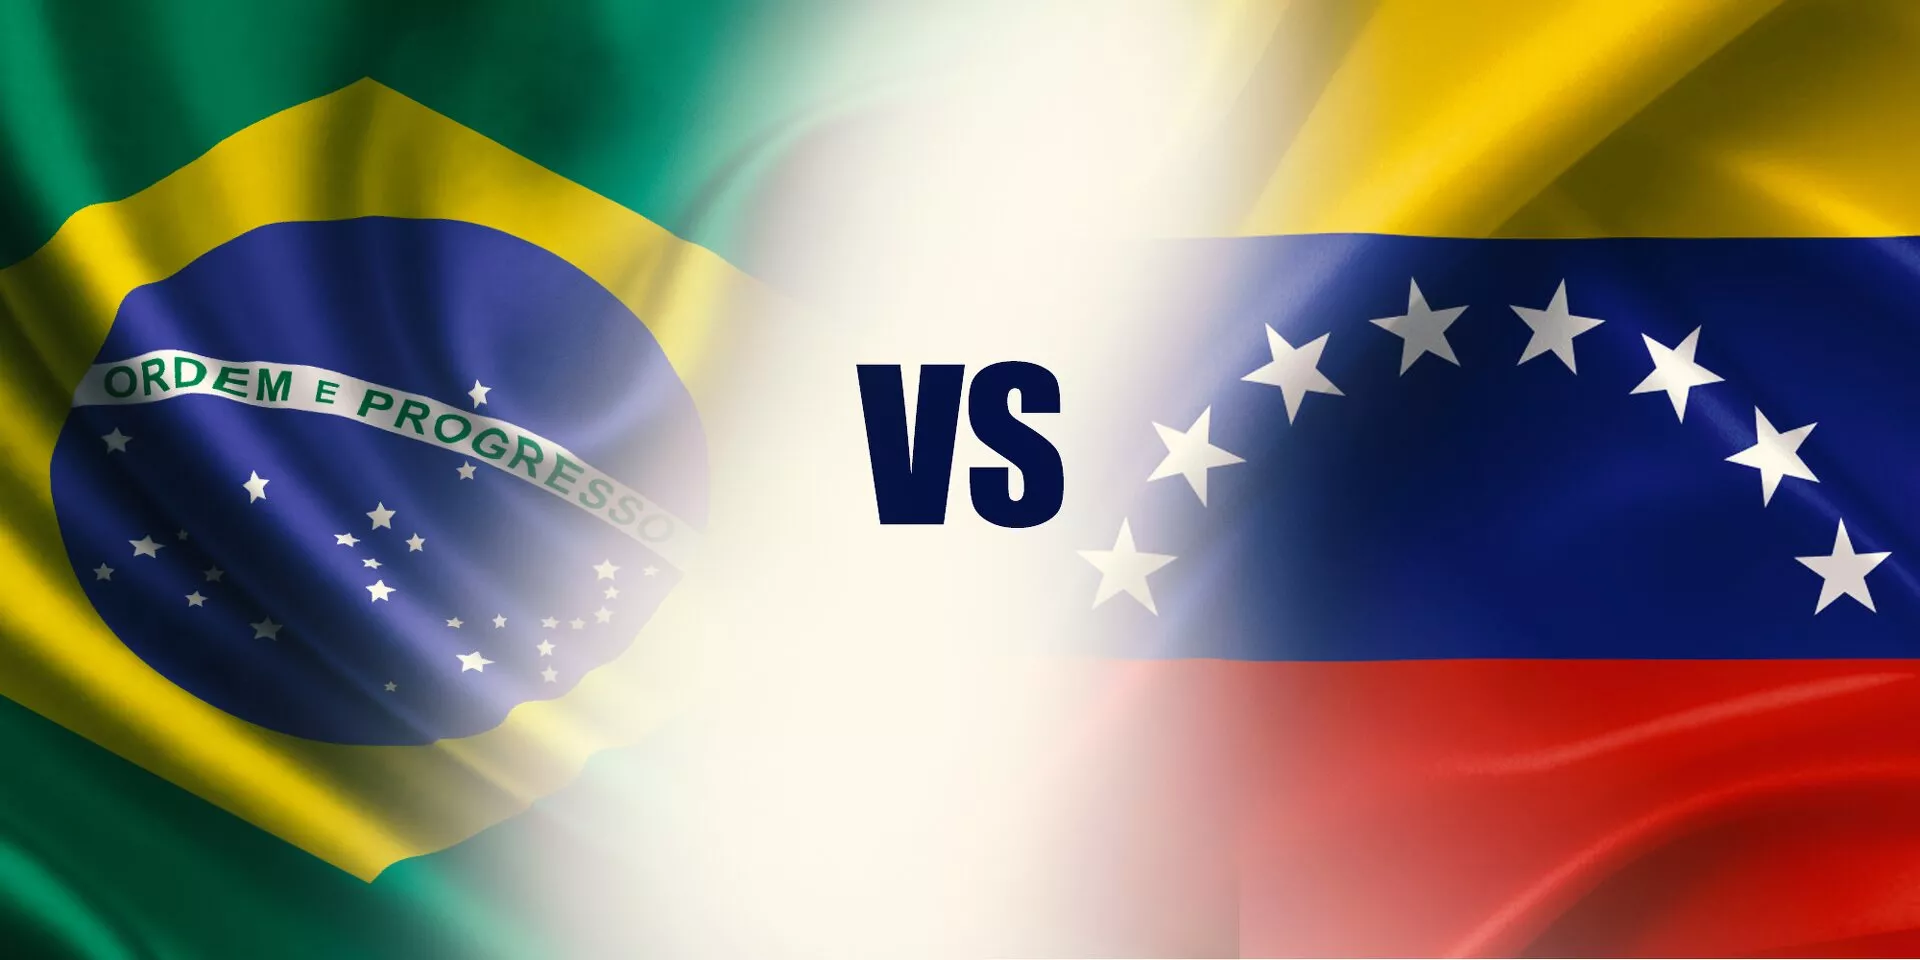 Brazil vs Venezuela